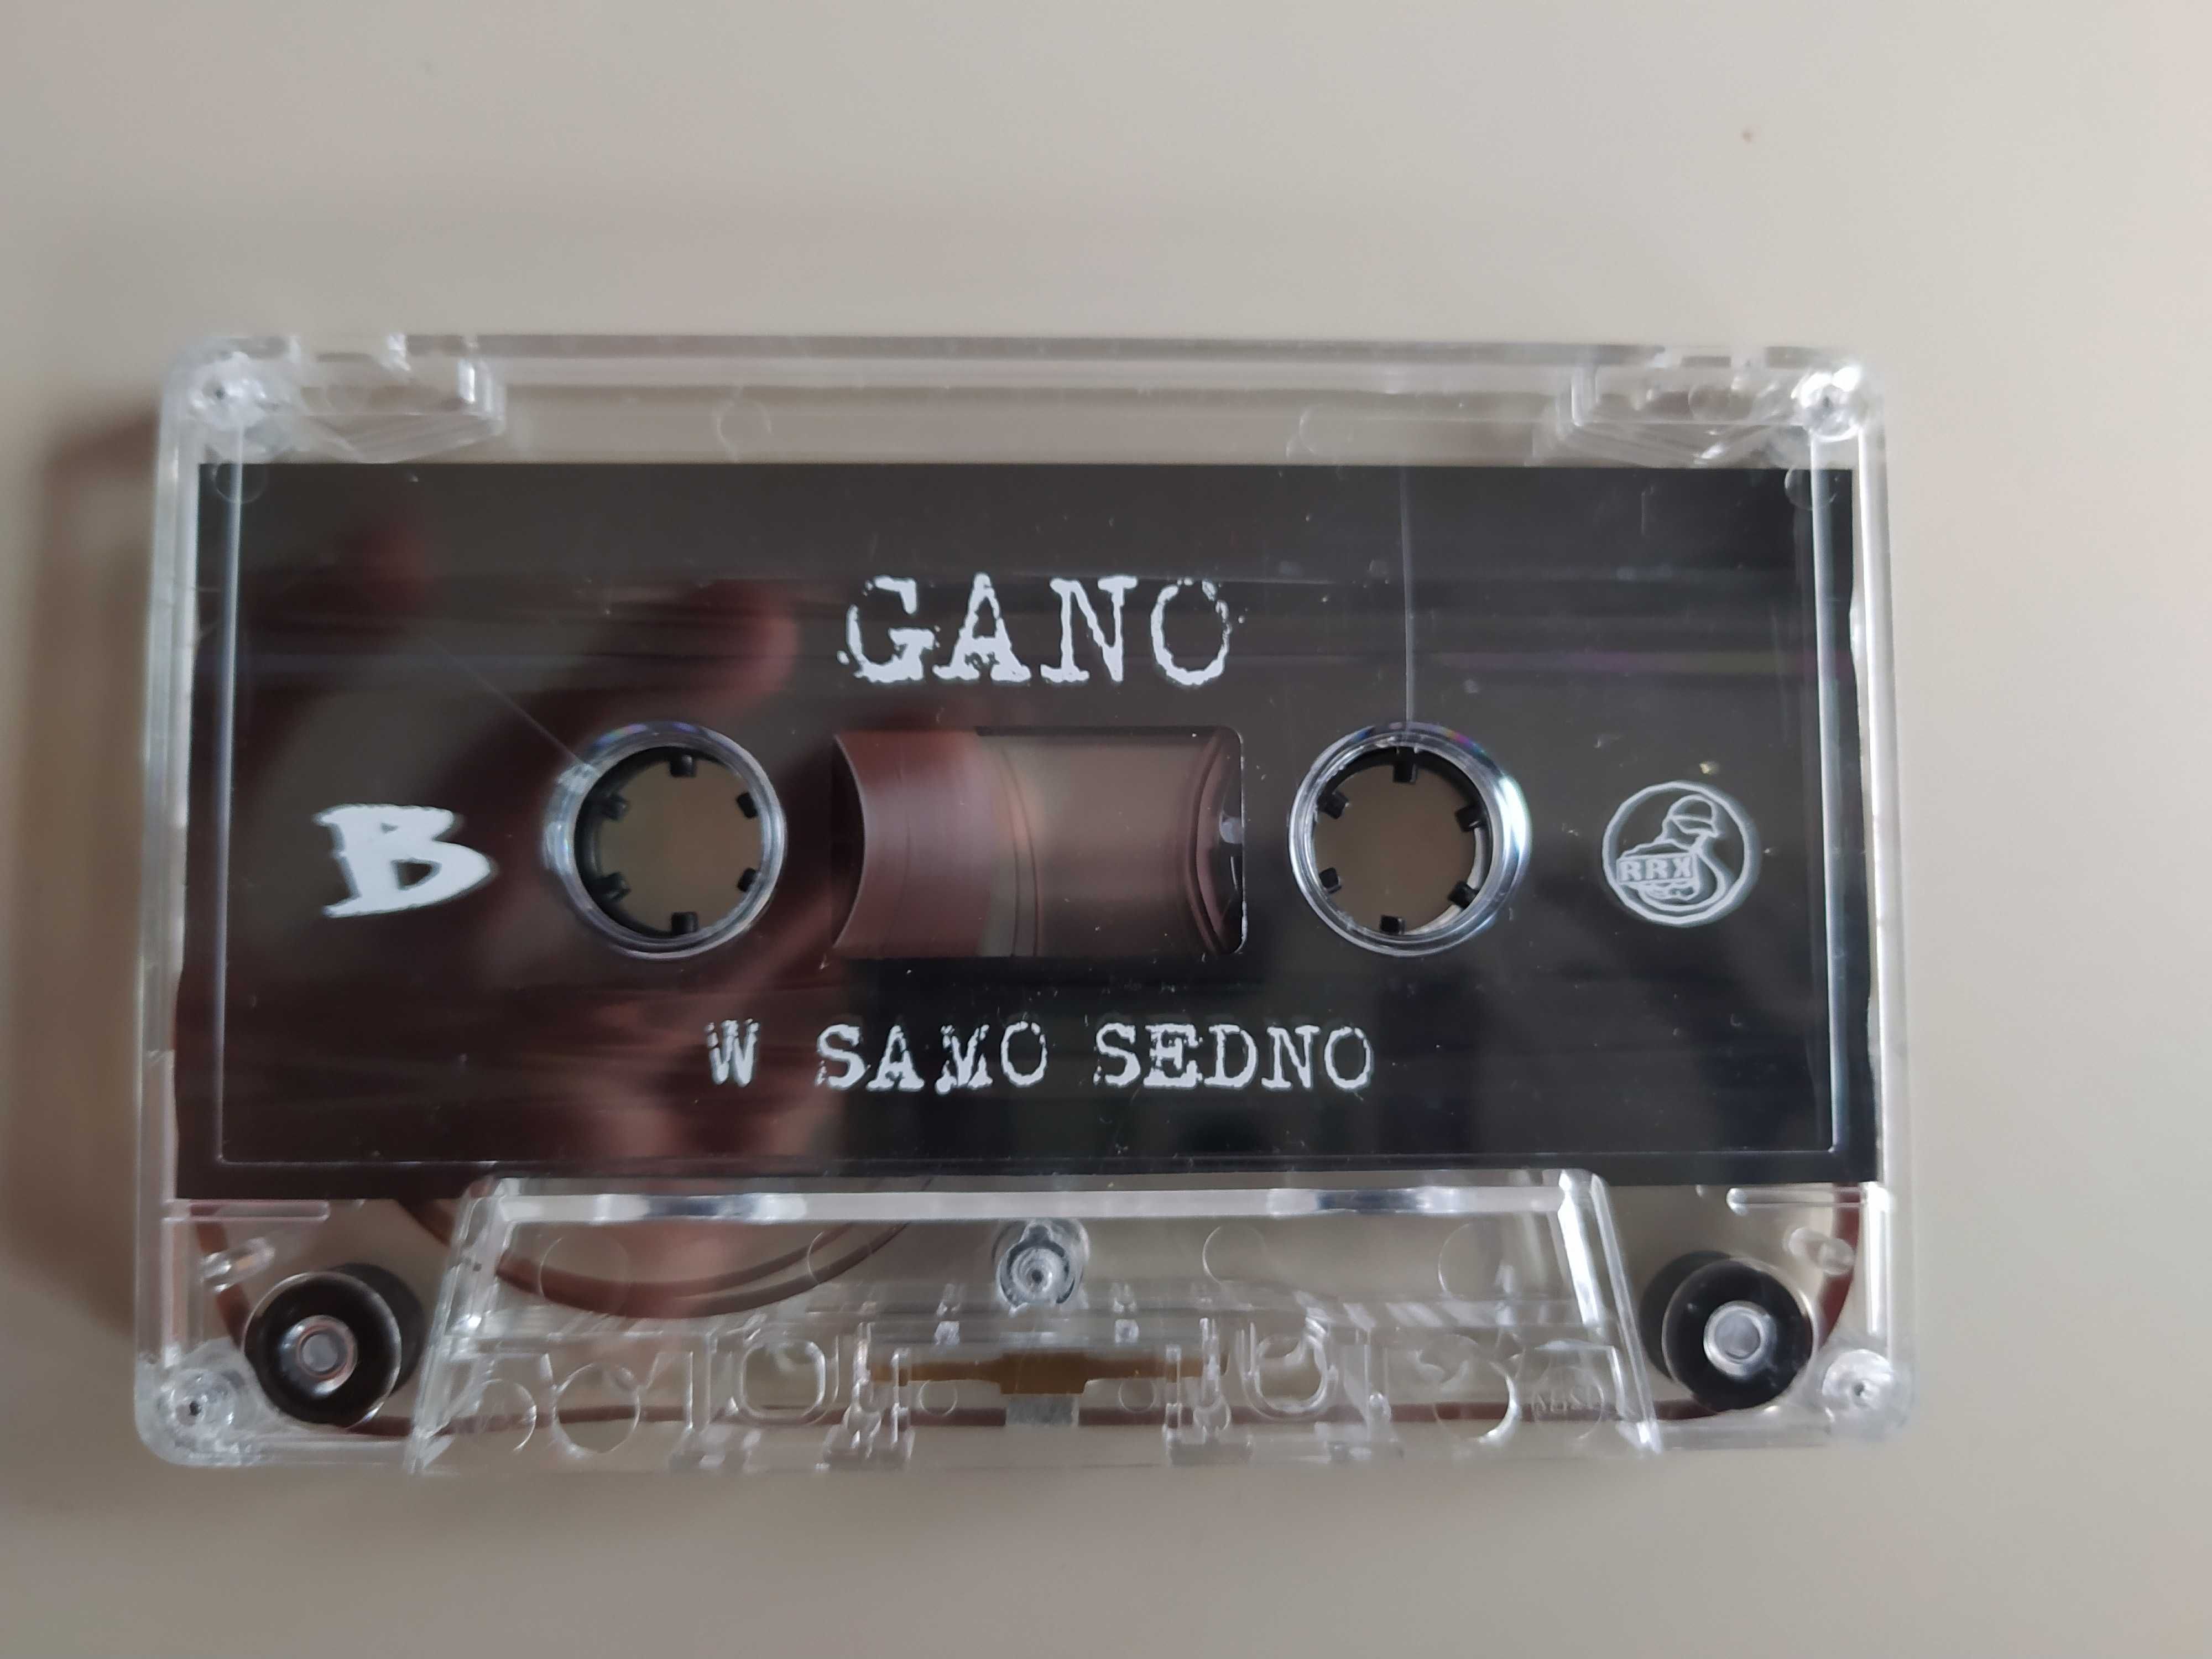 Gano - W samo sedno kaseta MC używana rap hip hop